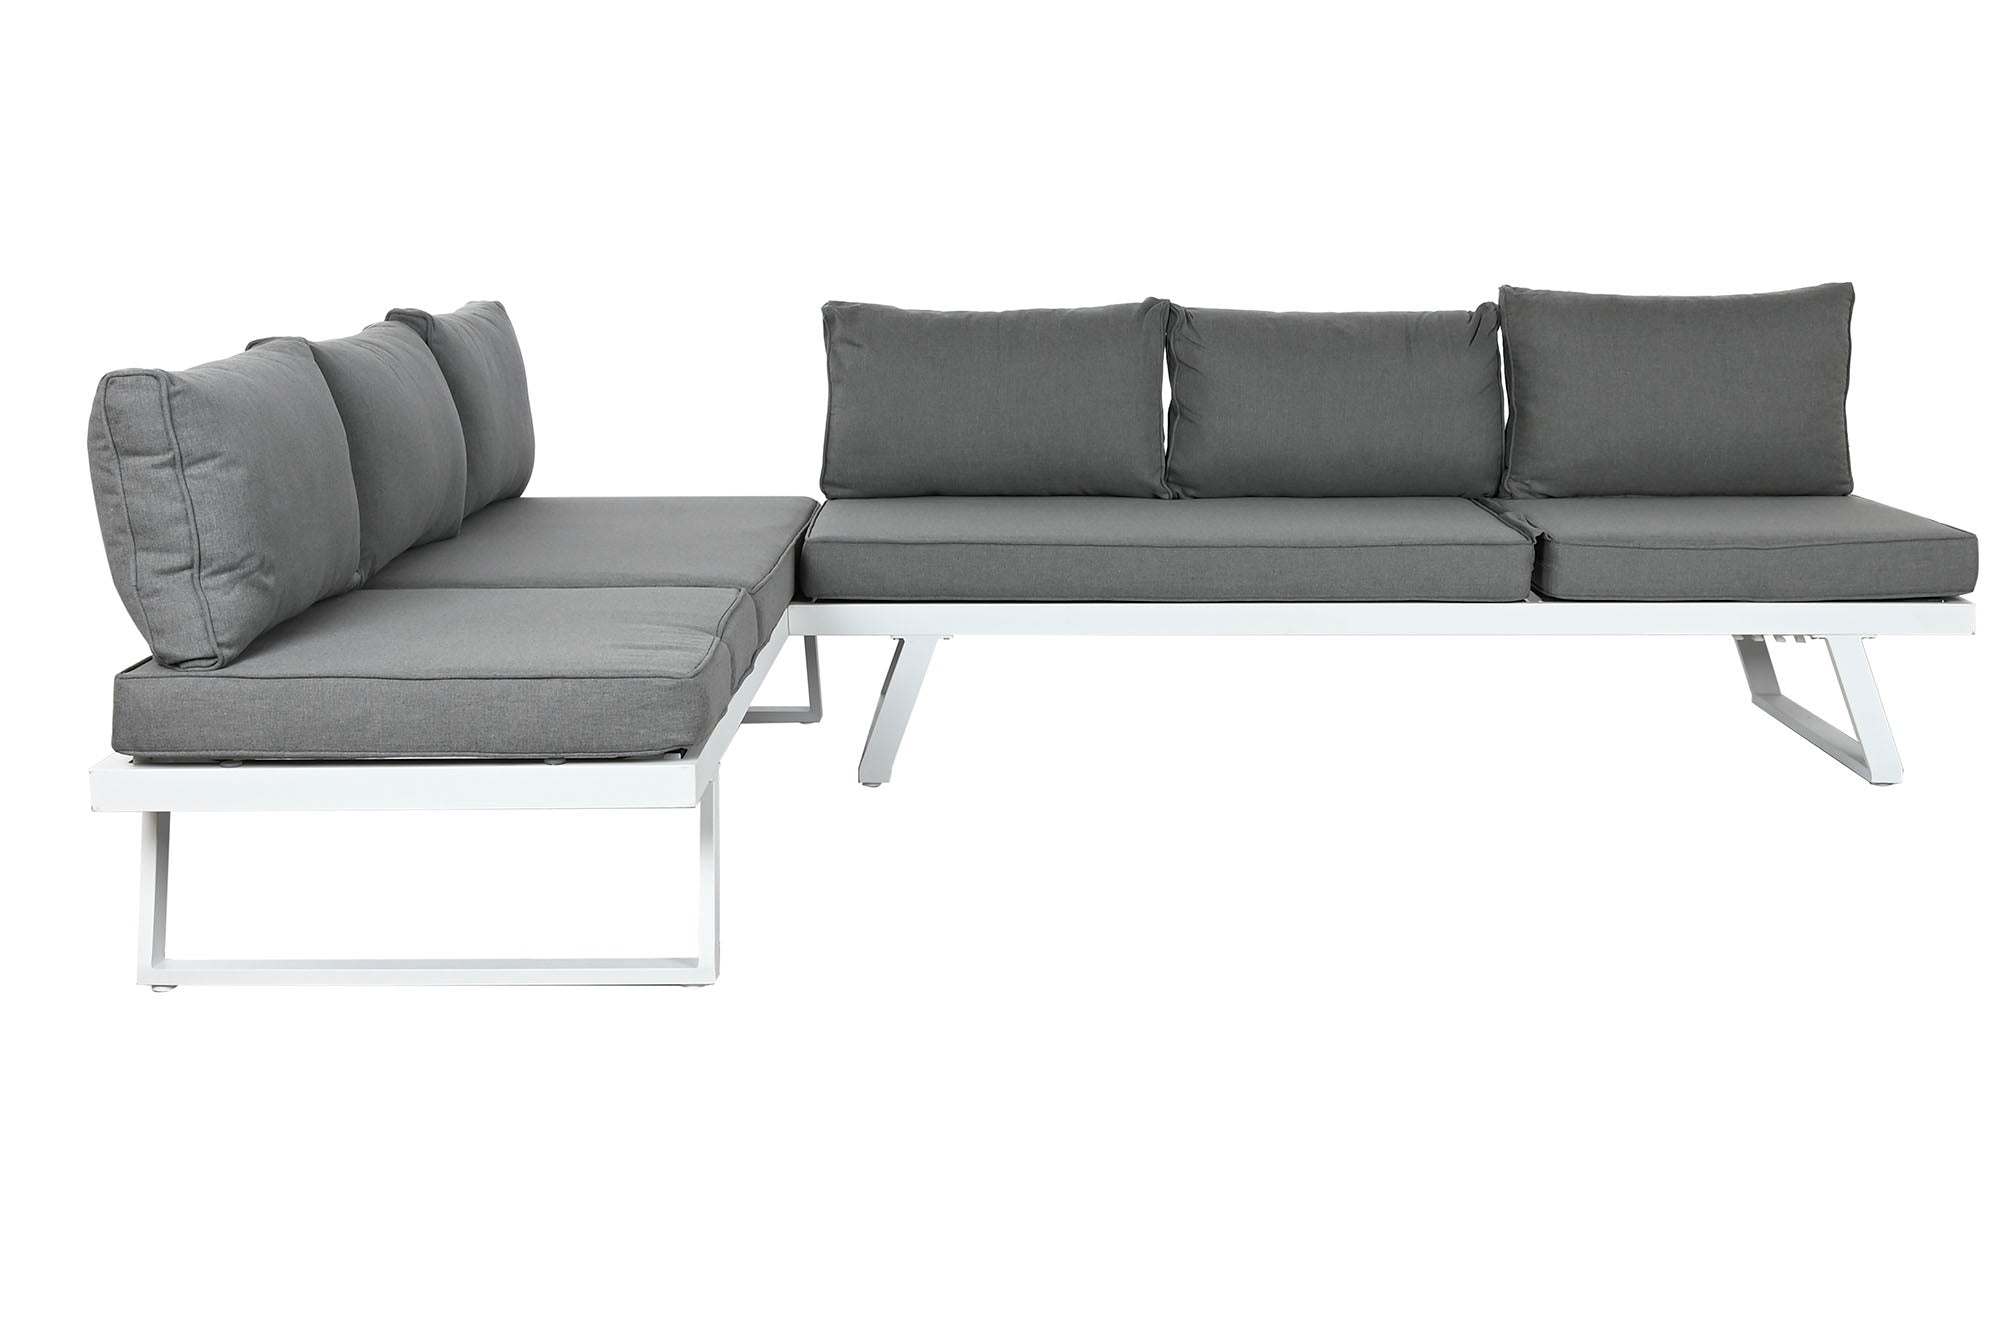 Sofa Set 3 Metal Poliester 130X68X65 Gris